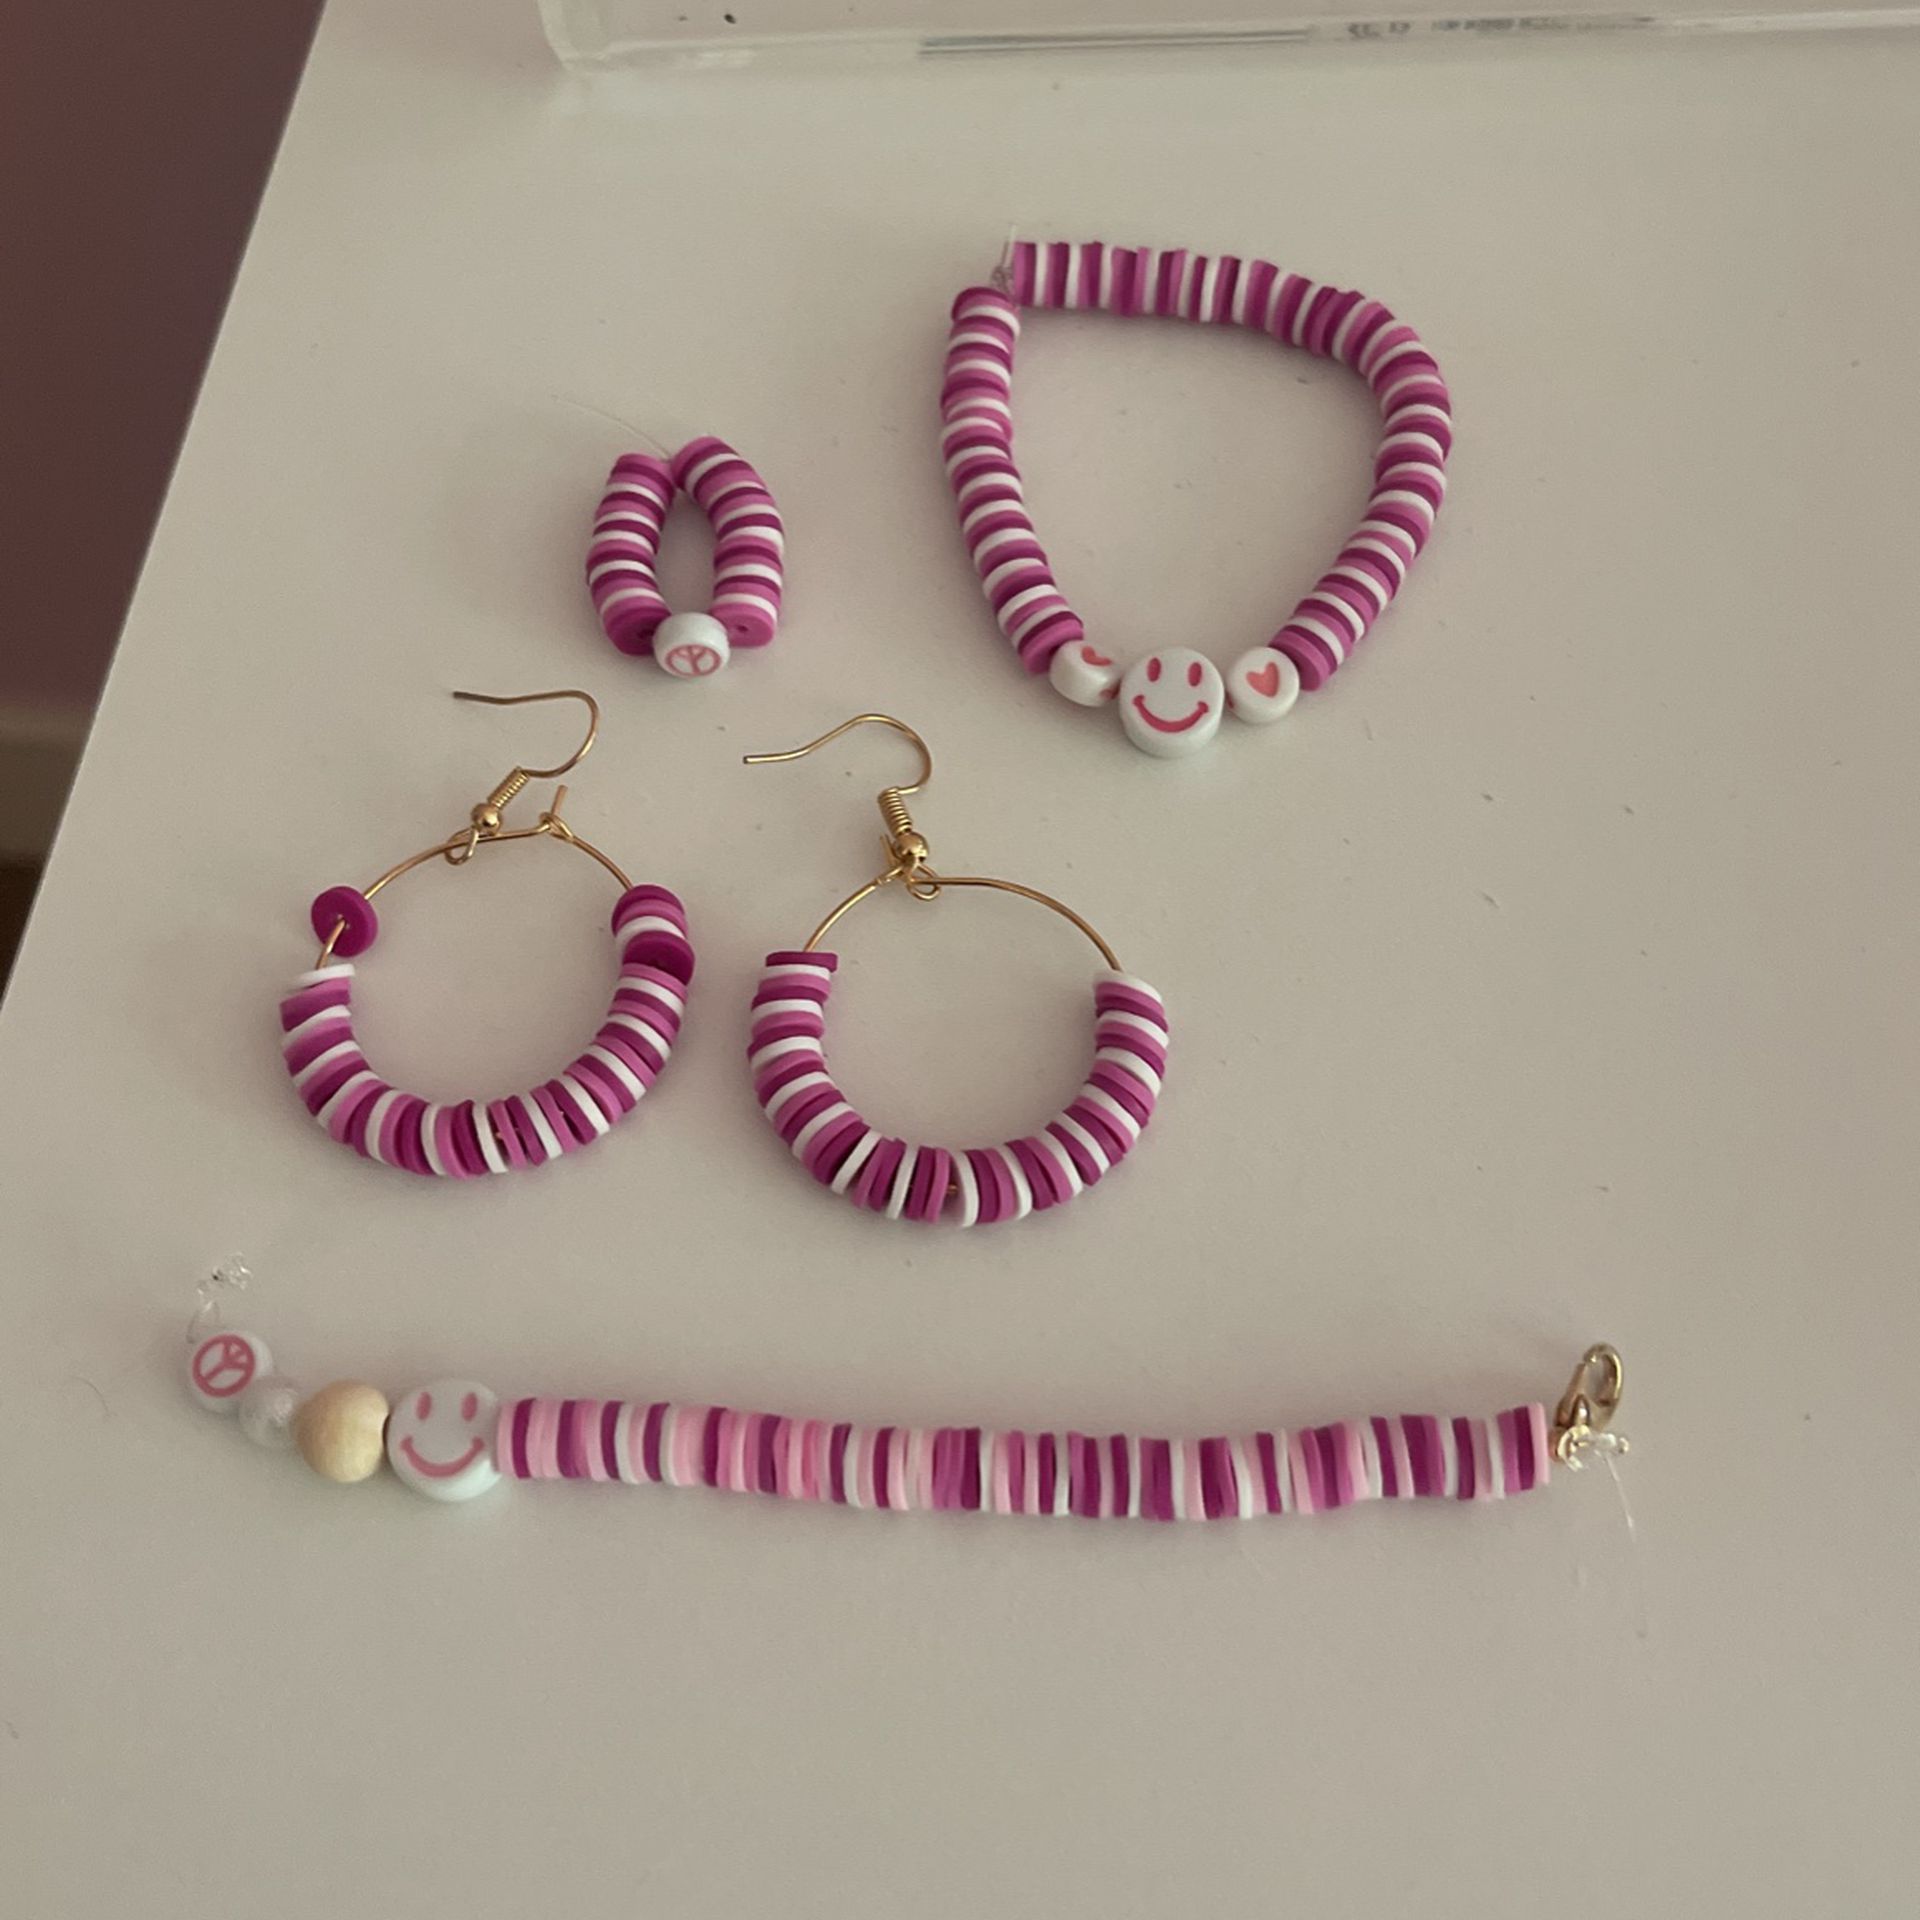 Handmade Ring Bracelet, Keychain, And Earrings For Kids